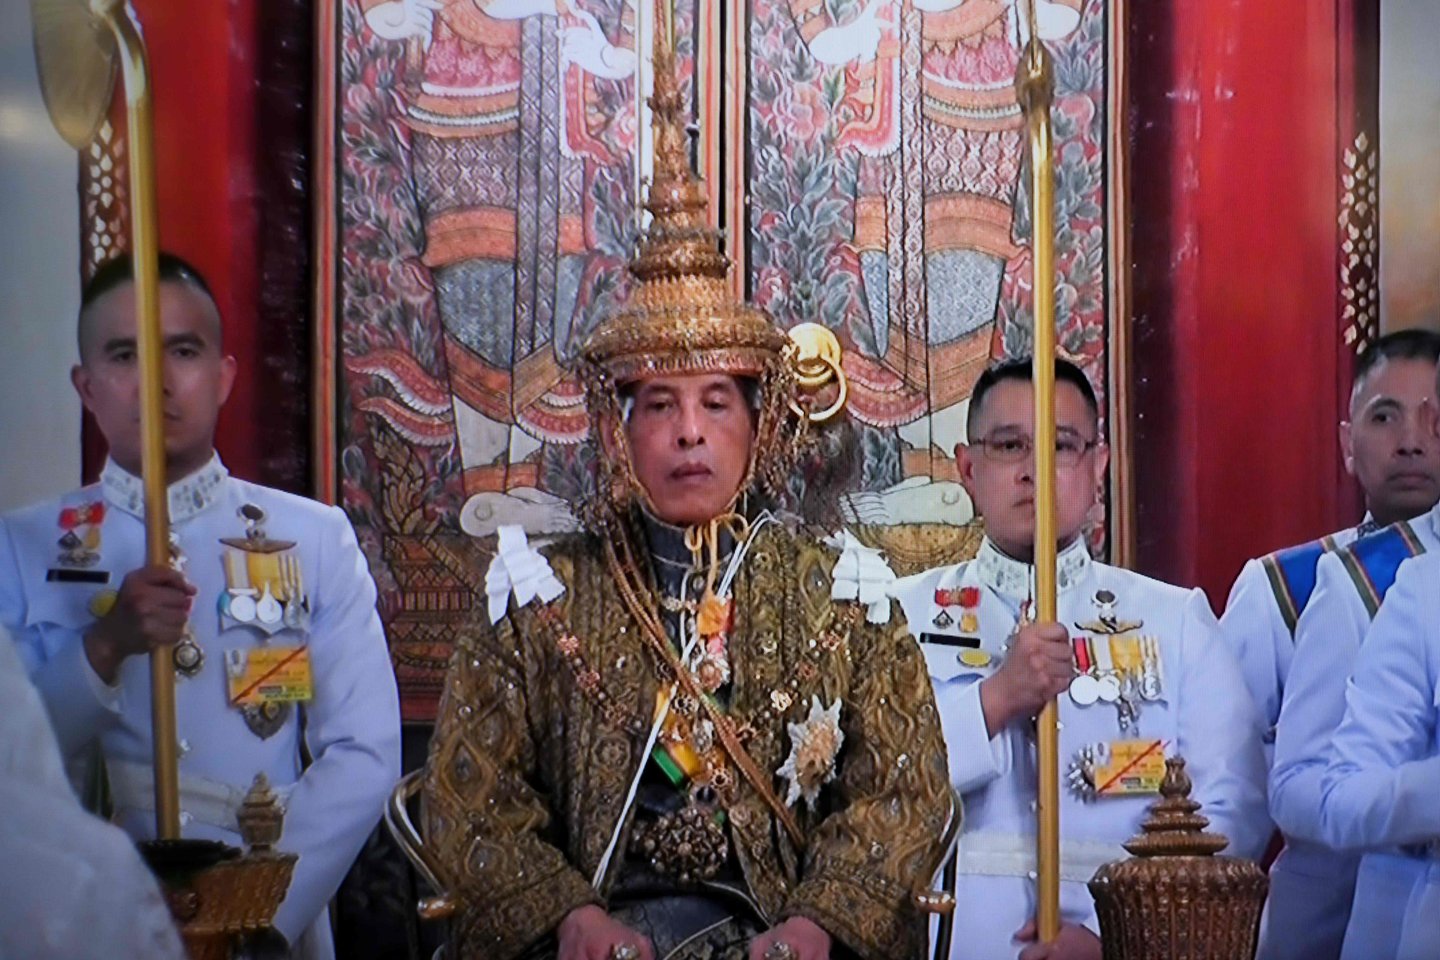 Brangakmeniais nusagstytus aukso spalvos drabužius vilkėjusiam 66 metų monarchui, dar žinomam kaip Rama X, buvo įteikta 7,3 kg sverianti Pergalės karūna.<br> AFP/Scanpix nuotr.